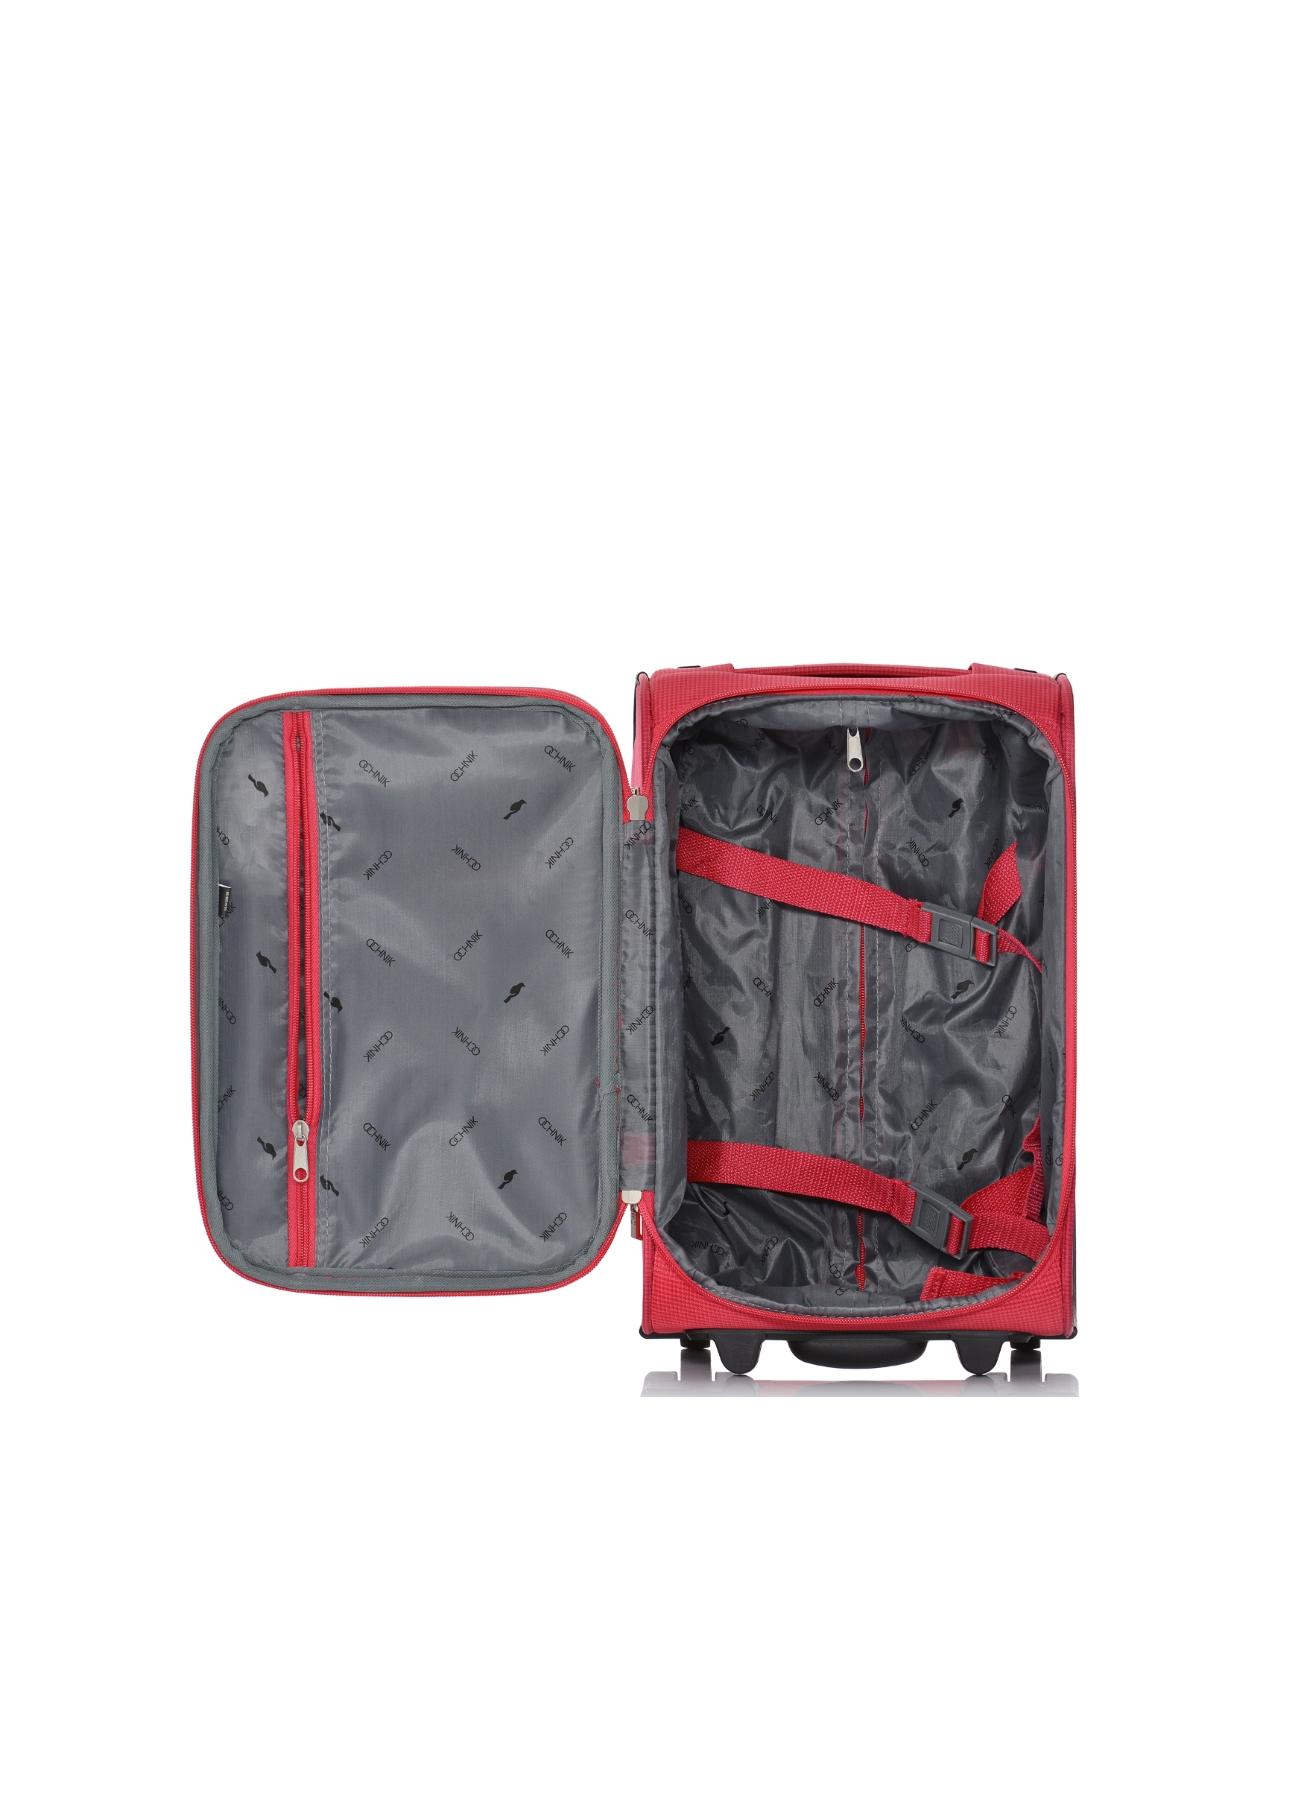 Kabinowa walizka na kółkach WALNY-0029-42-15R